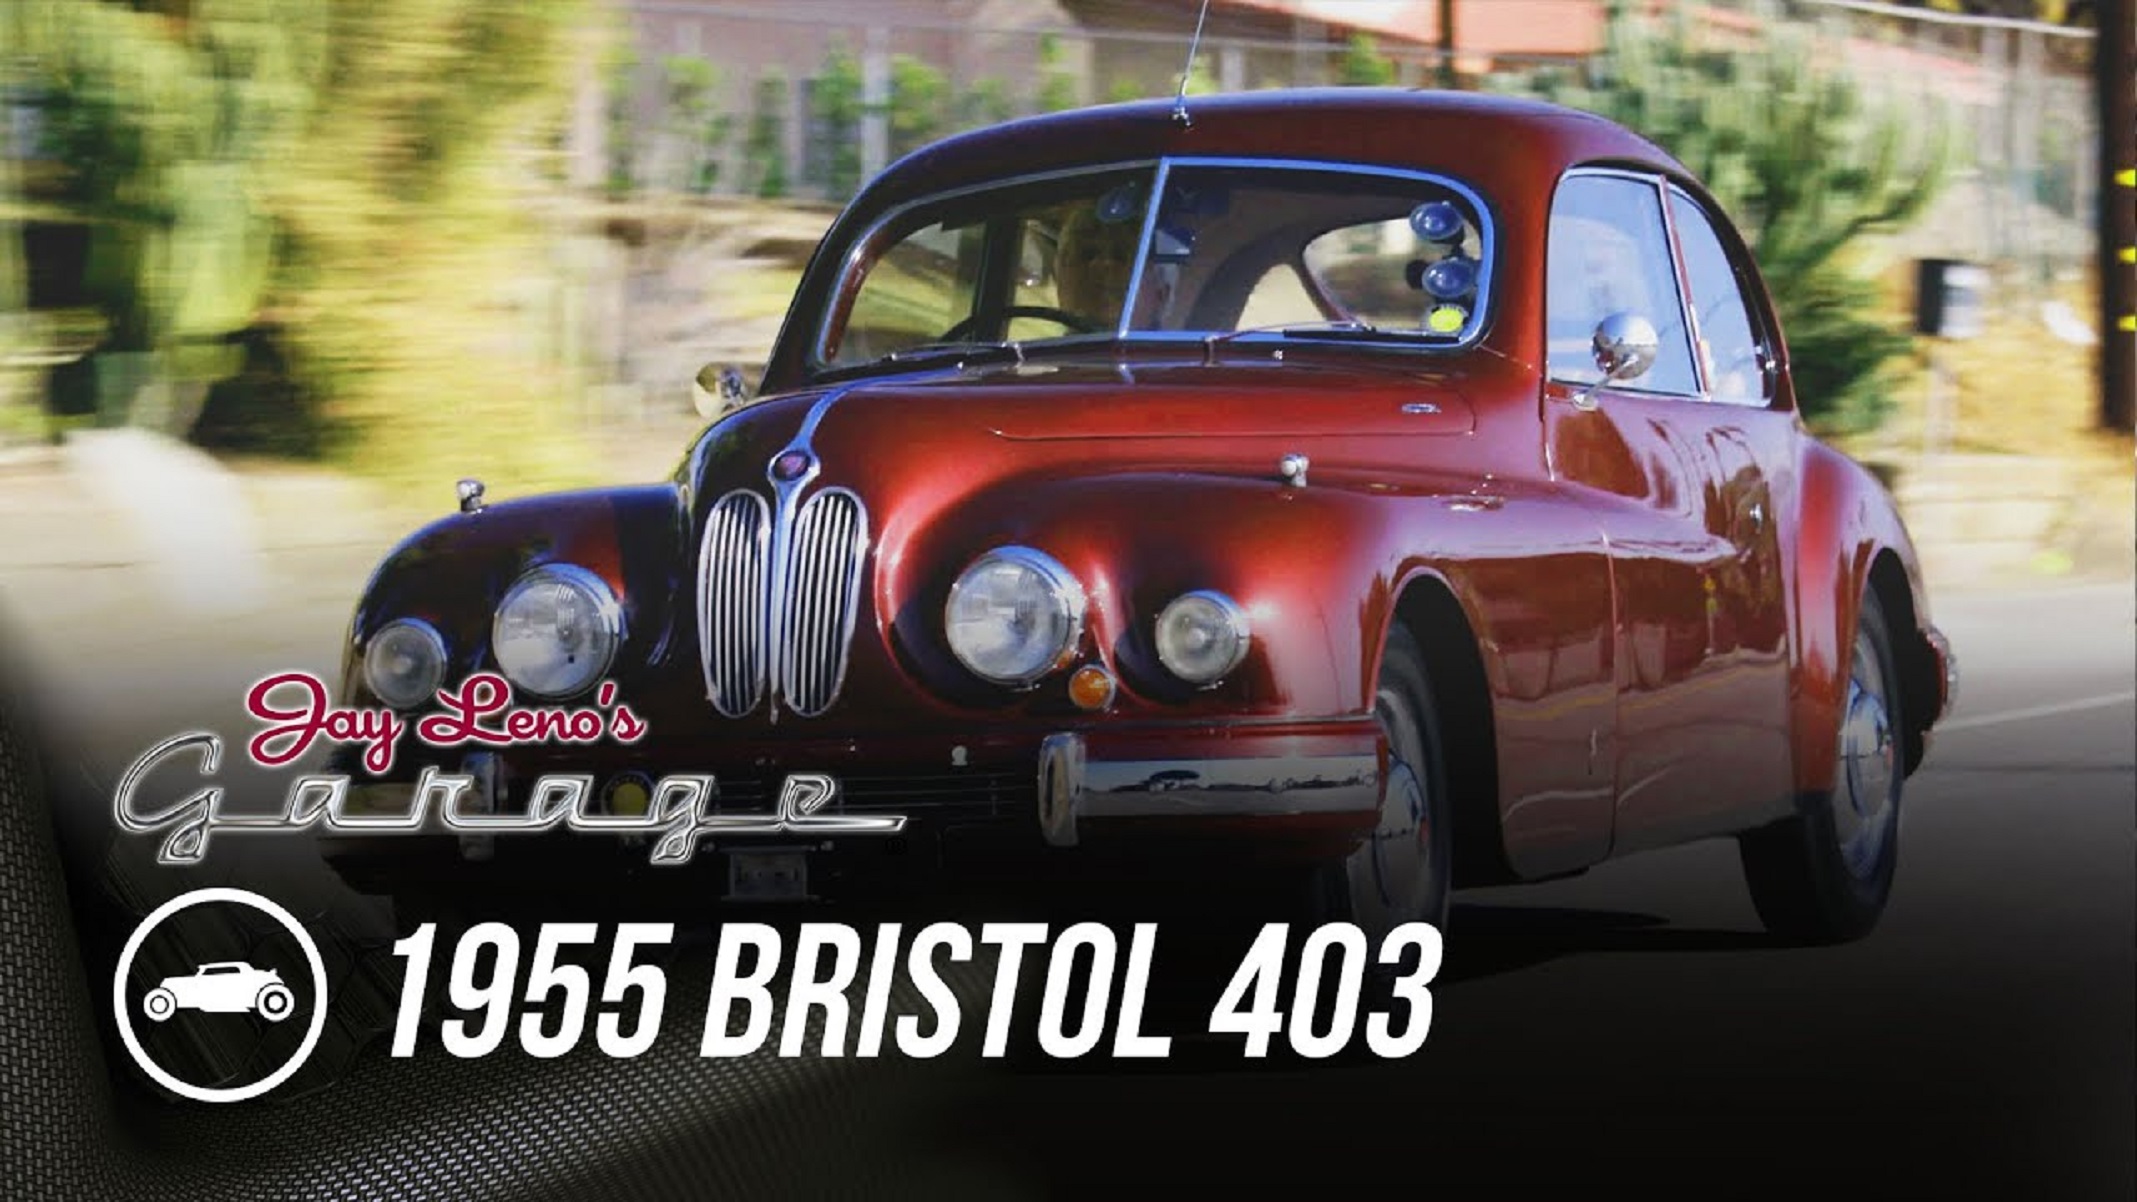 Jay Leno's red 1955 Bristol 403